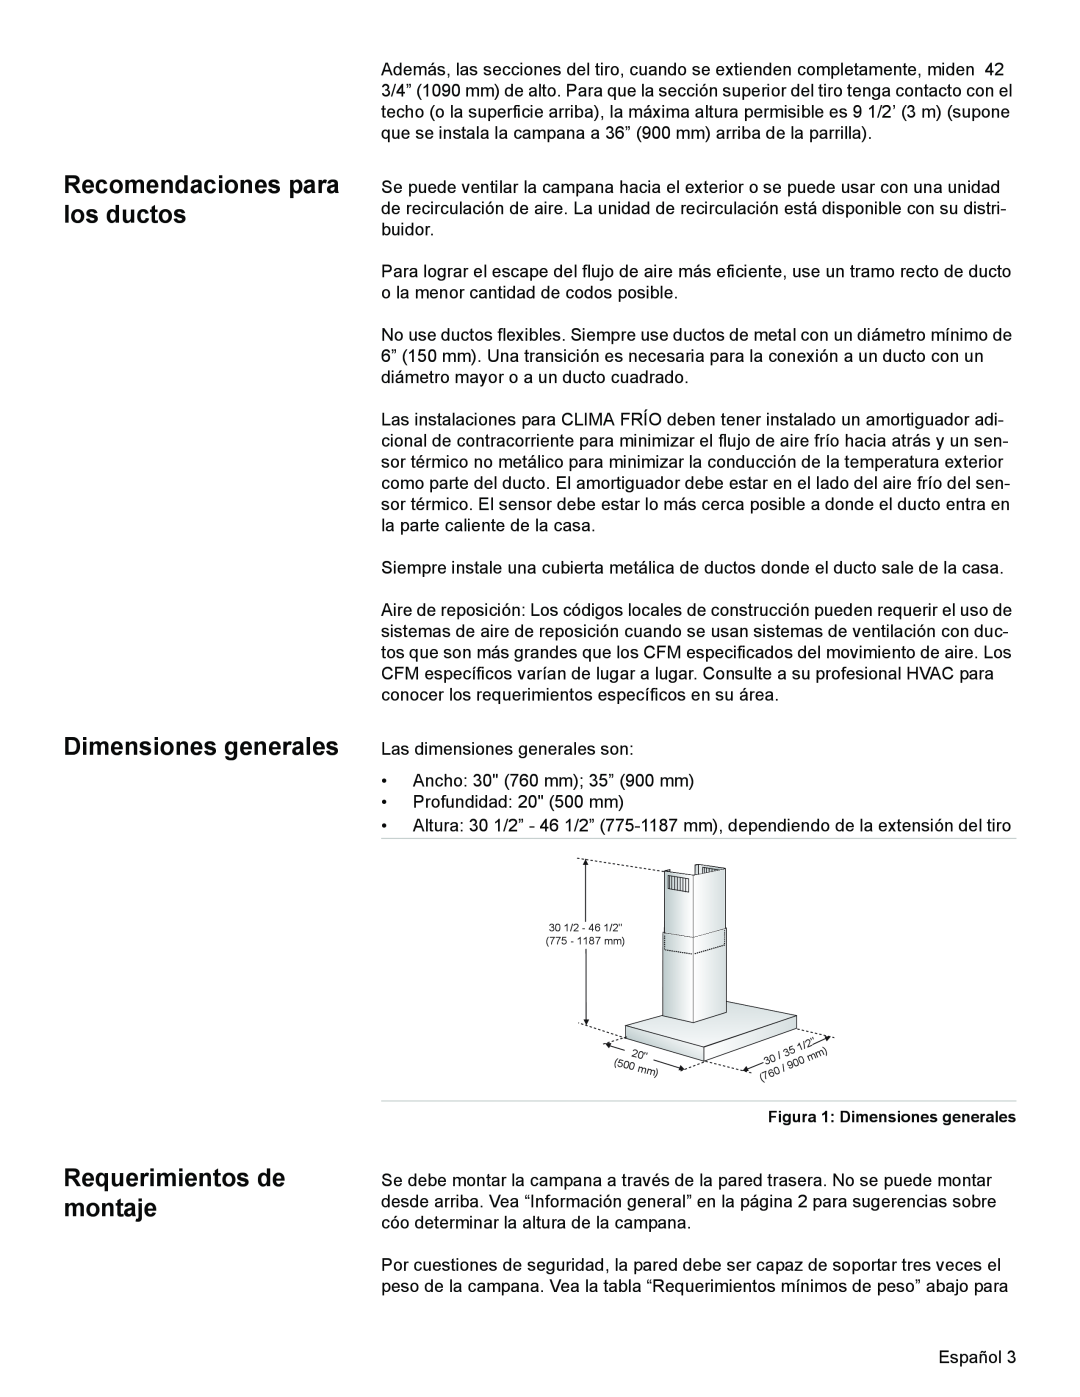 Bosch Appliances DKE94 installation manual Recomendaciones para los ductos Dimensiones generales, Requerimientos de montaje 